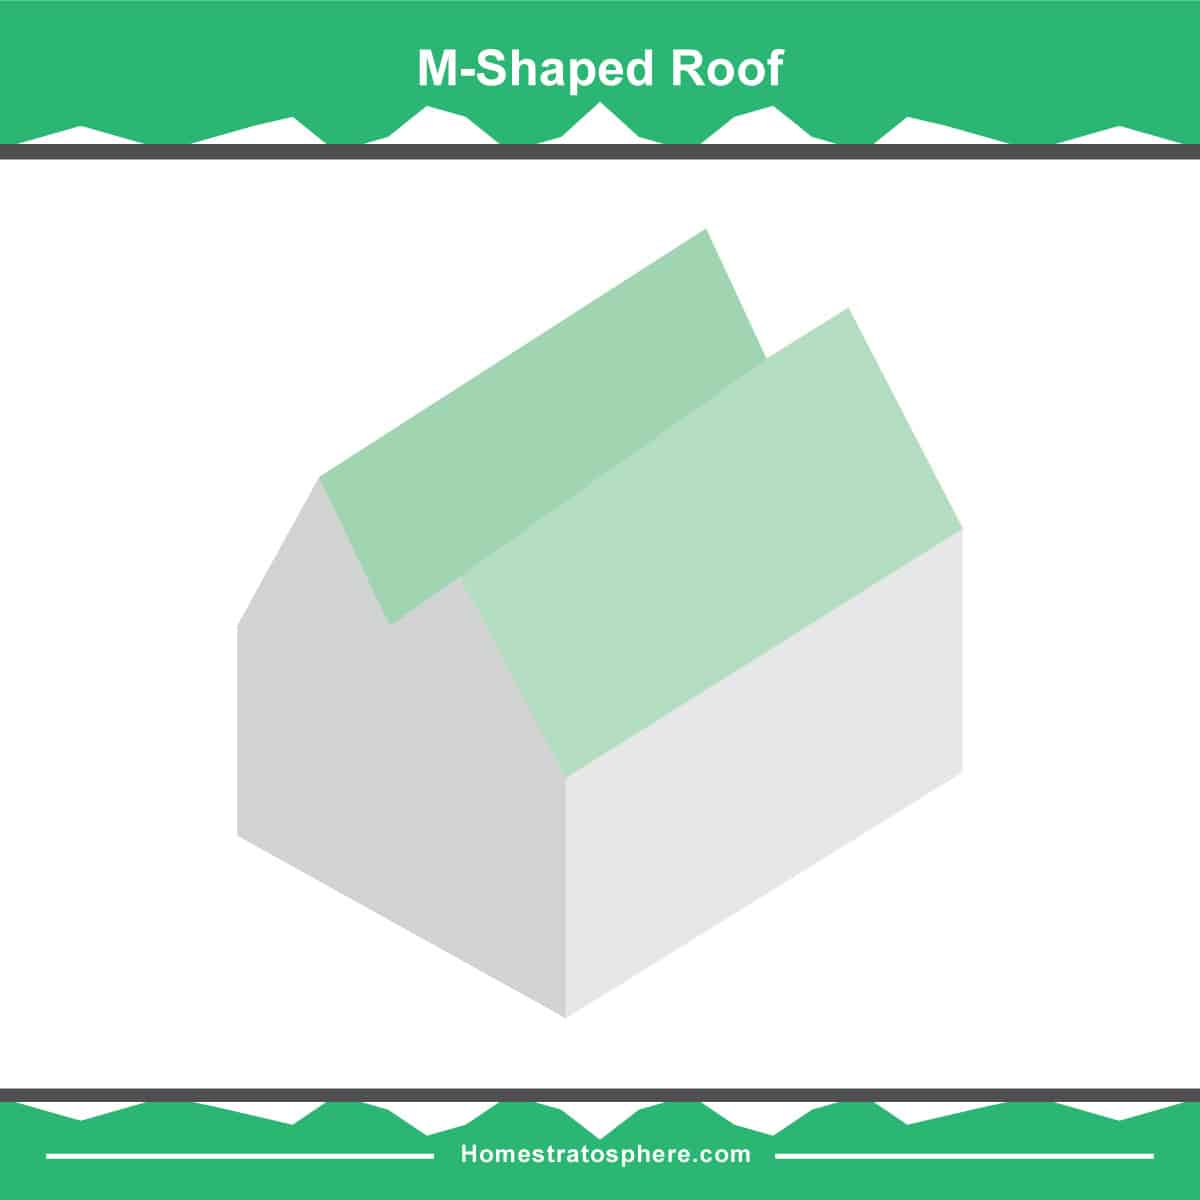 屋顶状态图